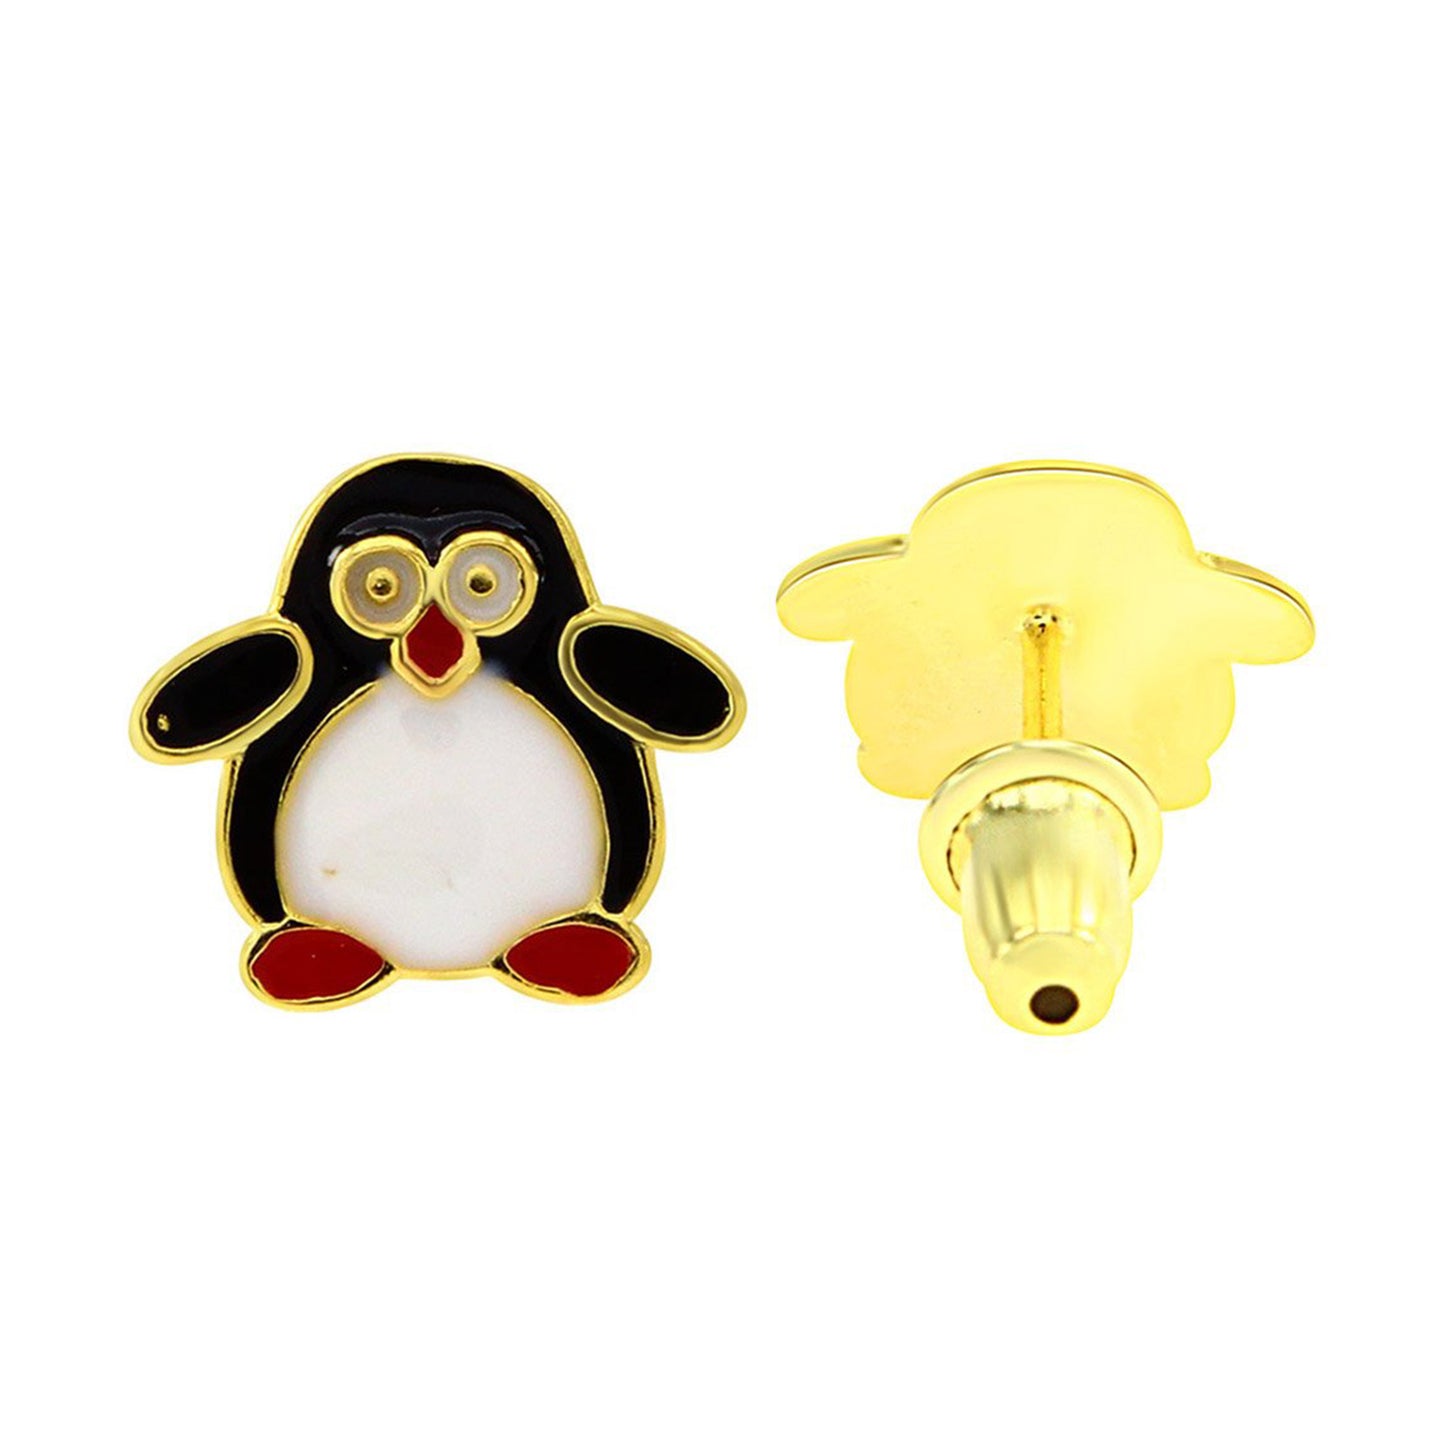 Jewelry Little Chubby Penguin Multi Color Enamel Stud Earrings In 925 Over Sterling Silver